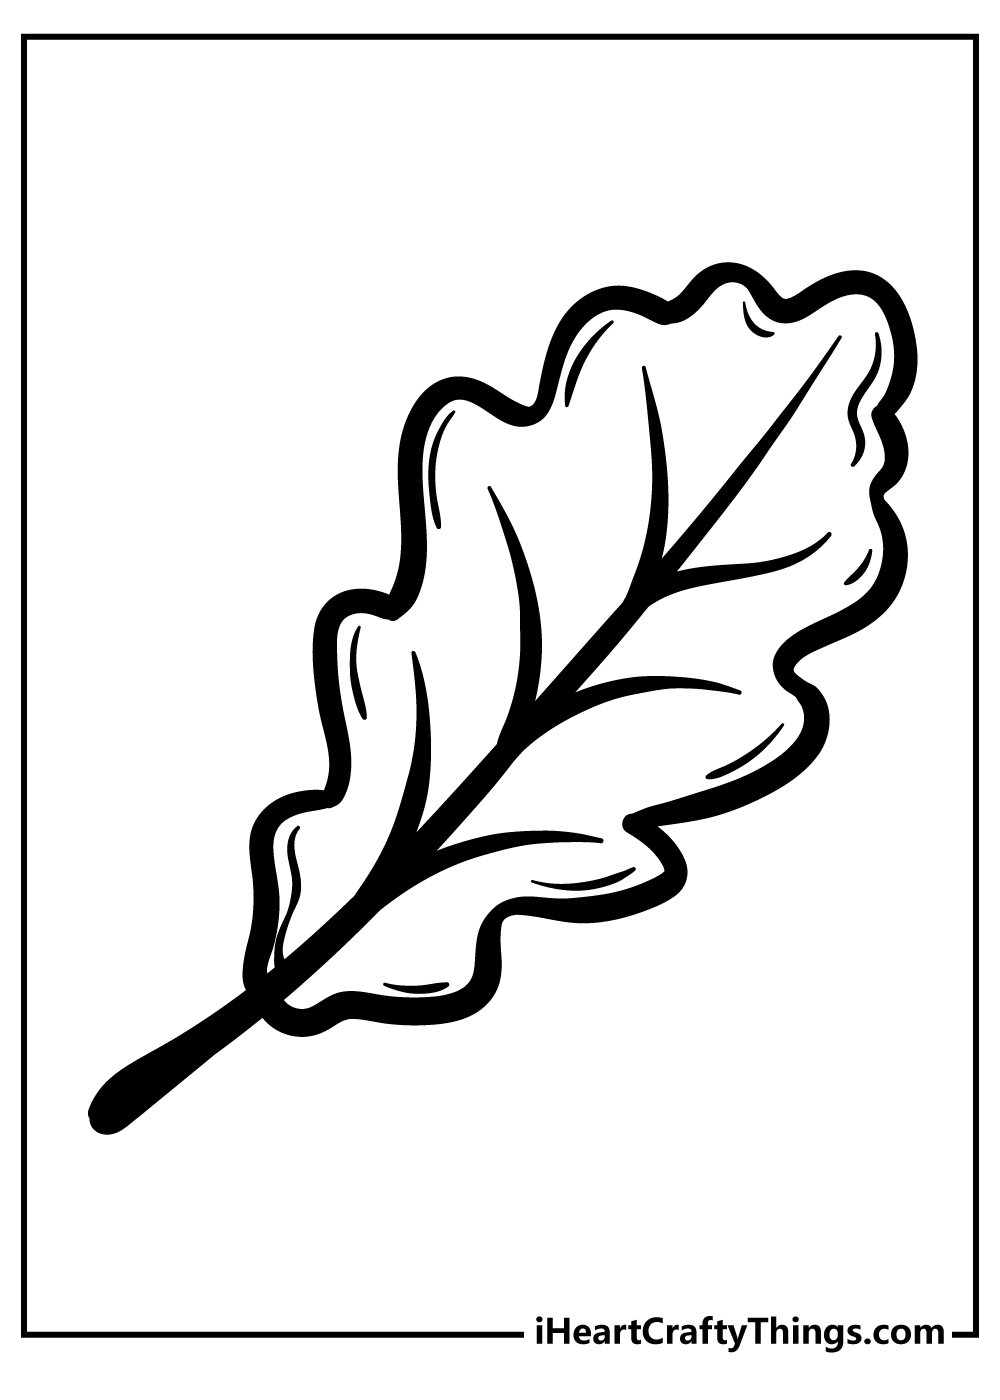 Leaf Coloring Original Sheet for children free download